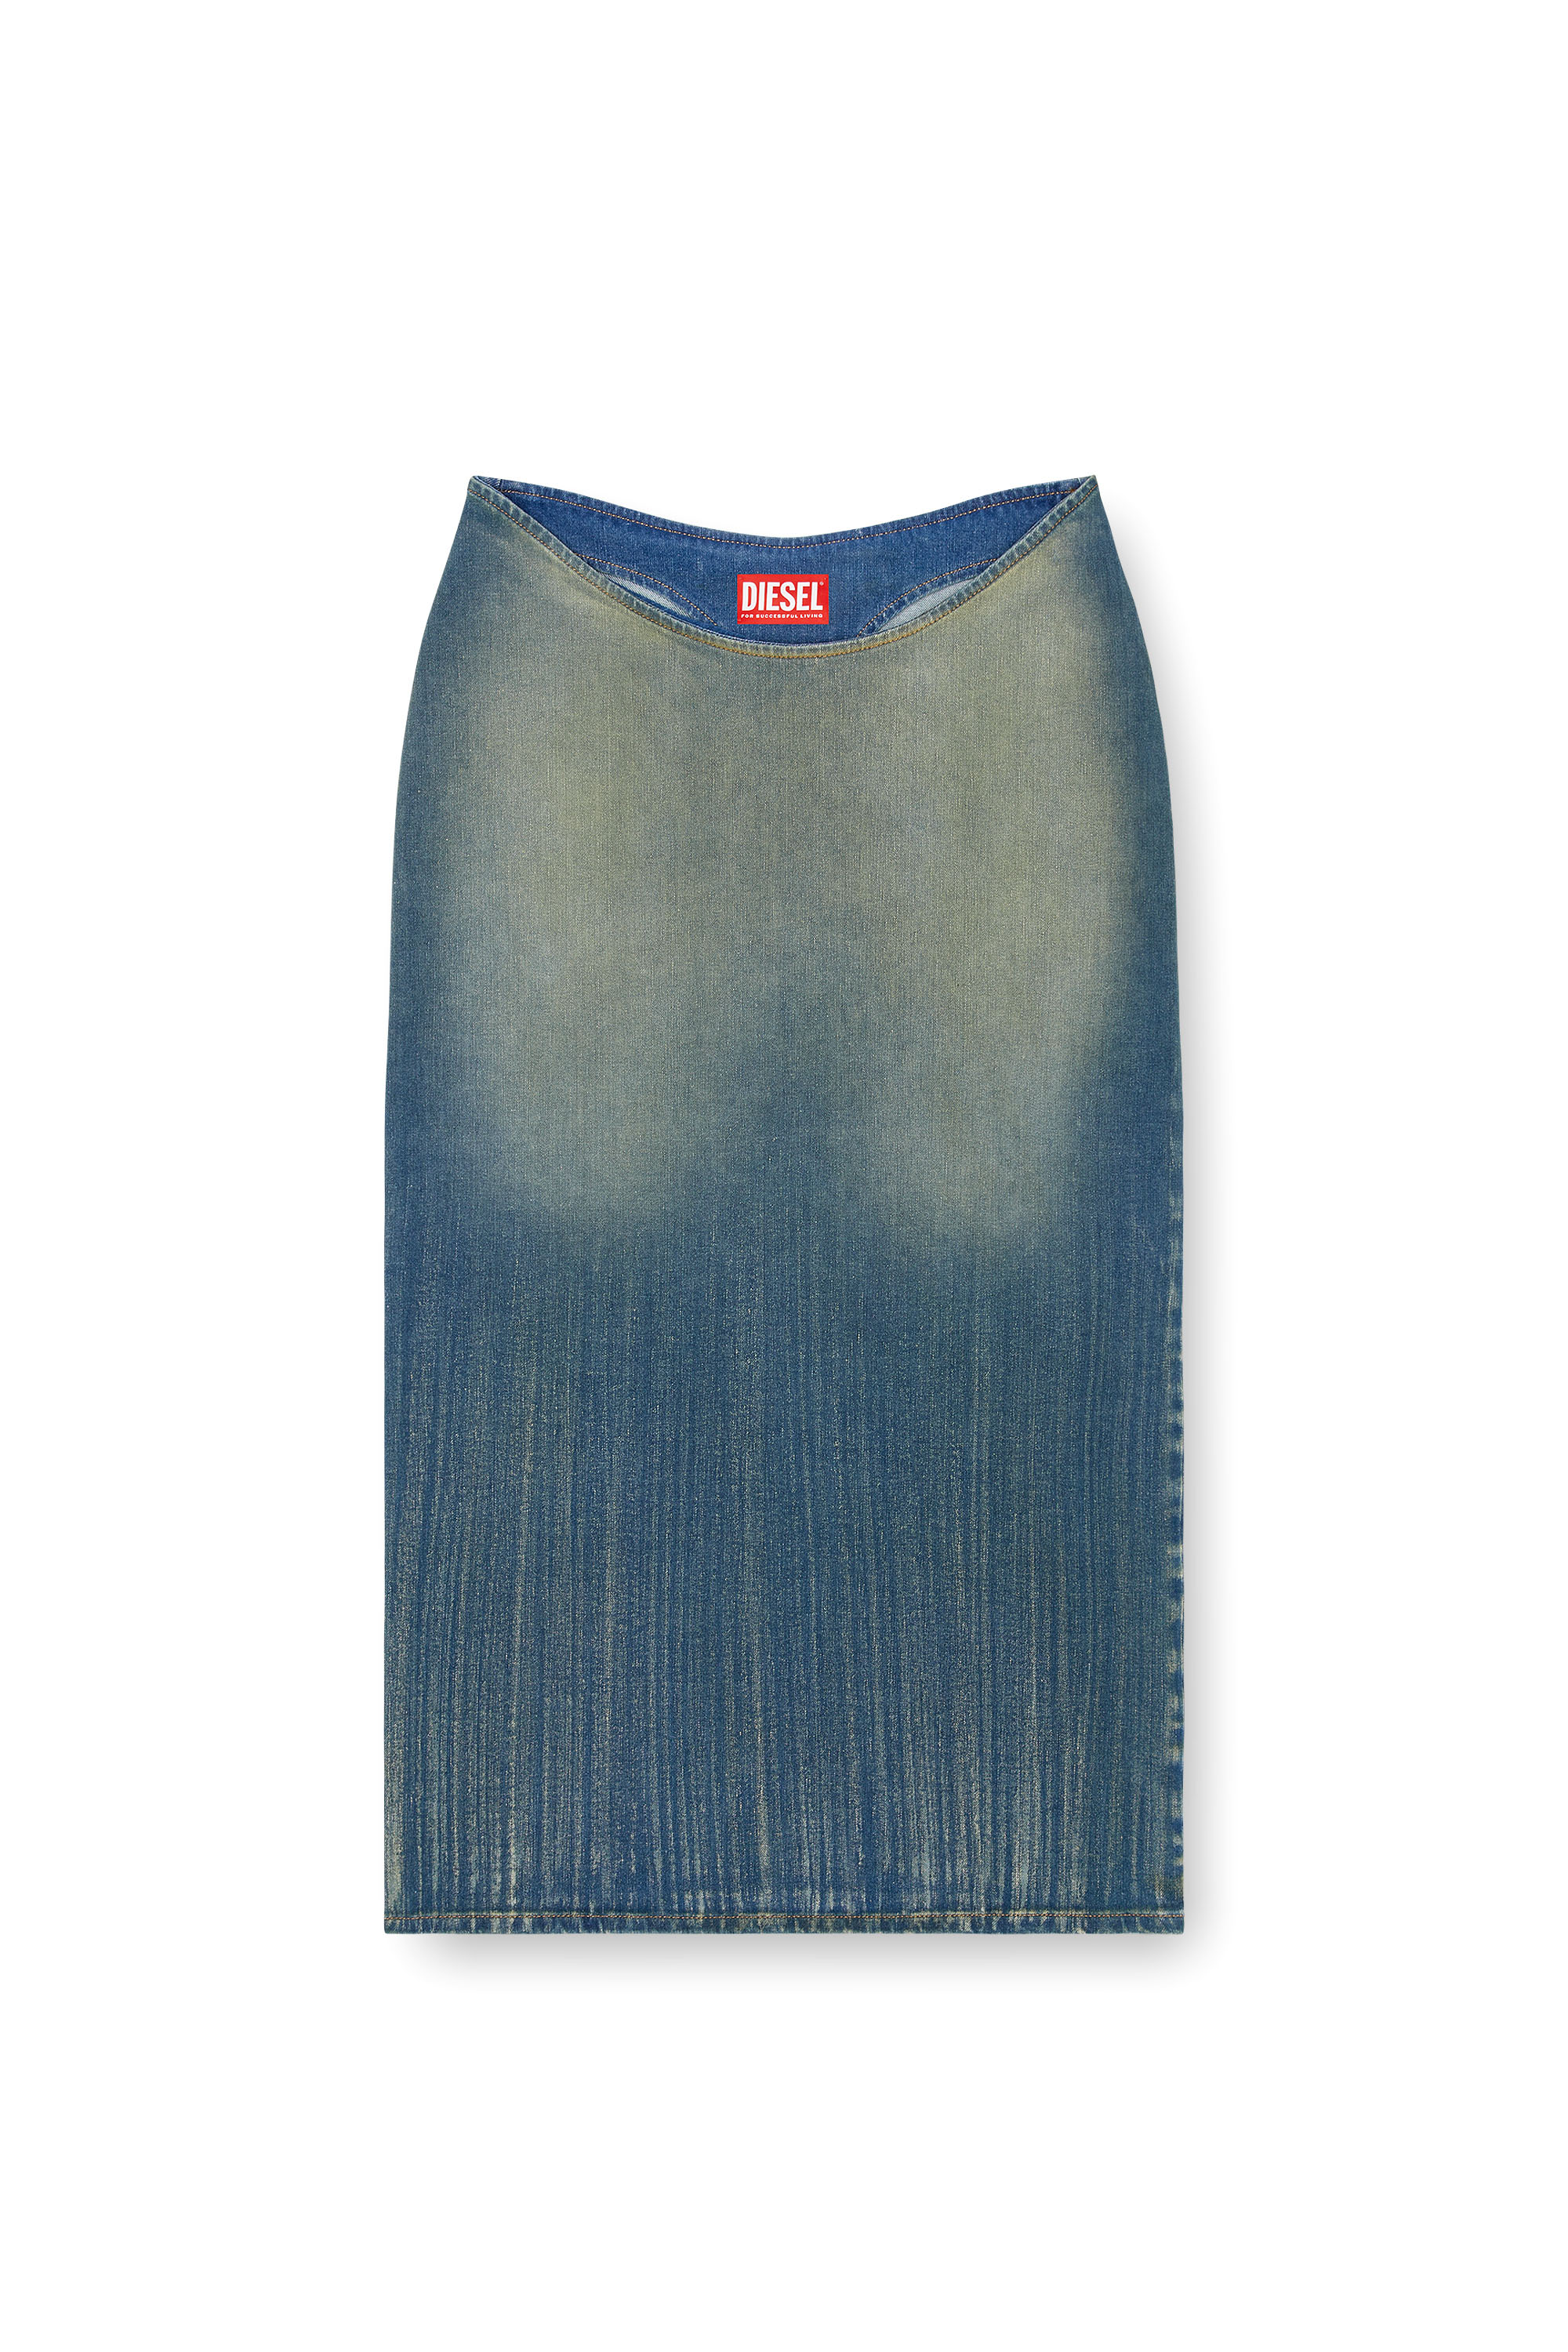 Diesel - DE-MAURY-S, Woman Pencil skirt in light streaky denim in Blue - Image 3